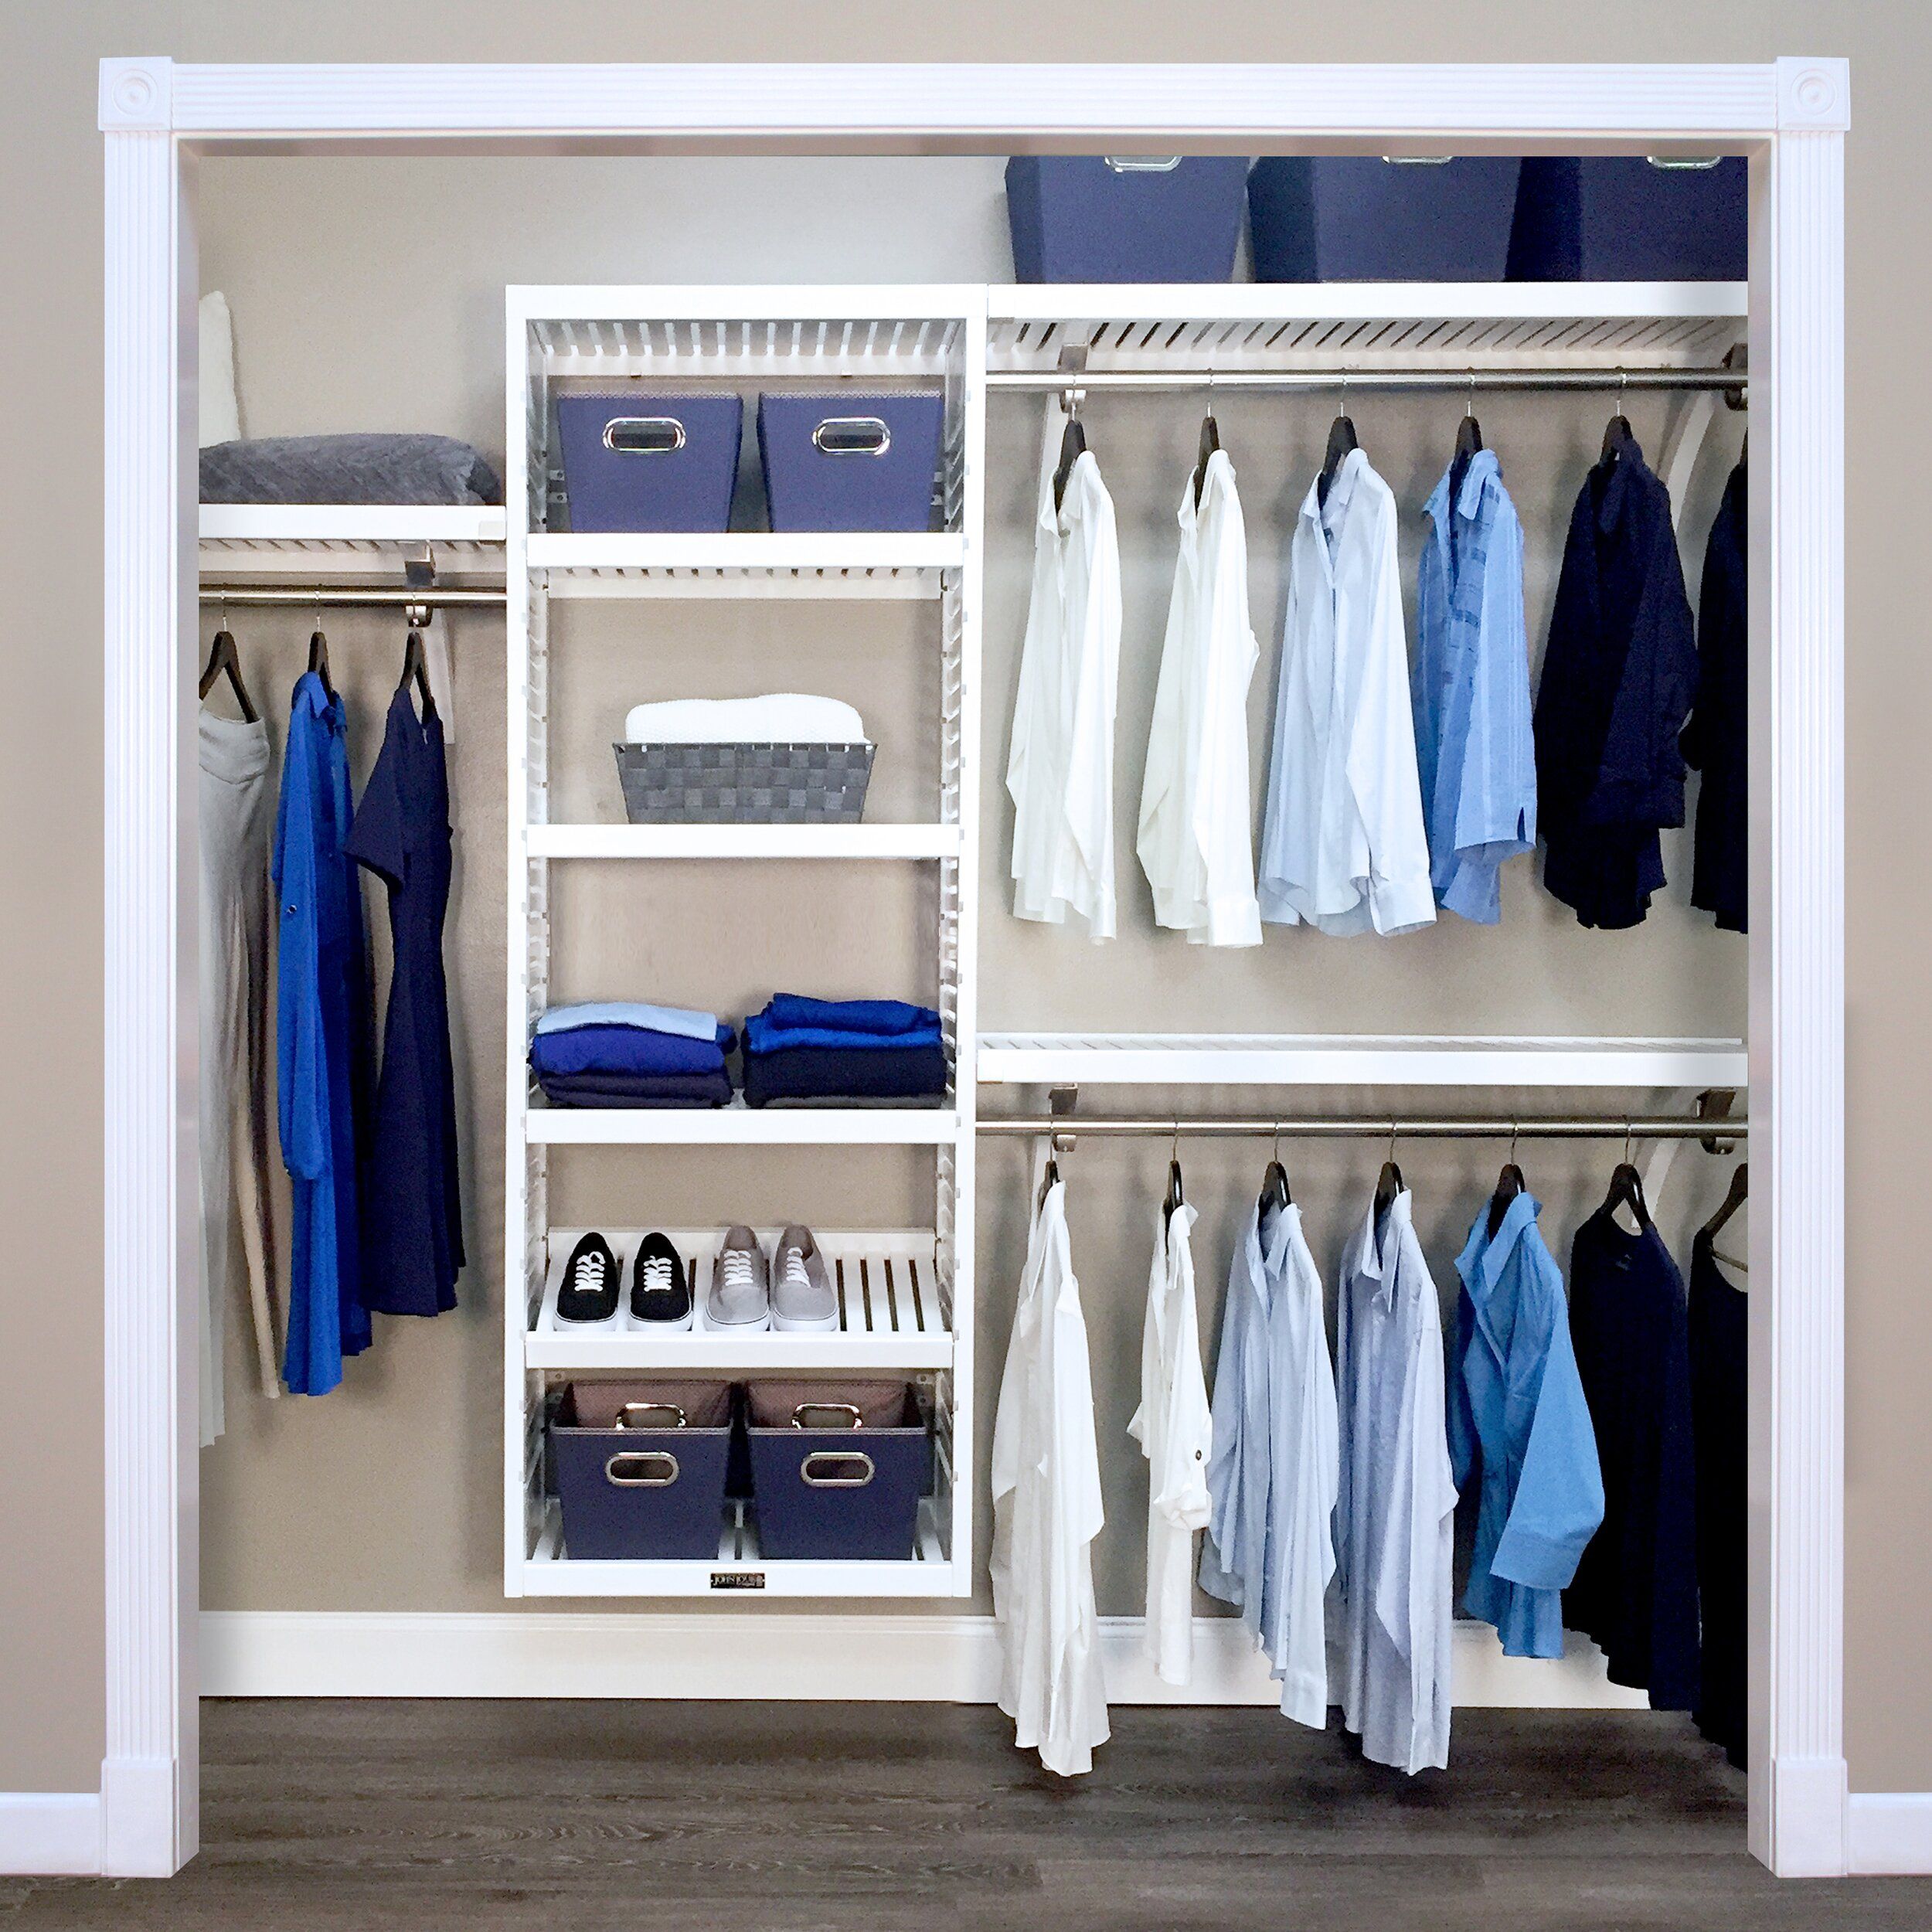 VERTICAL CLOSET ORGANIZER 24" Storage Shelf System Clothes Shelves Rods White 